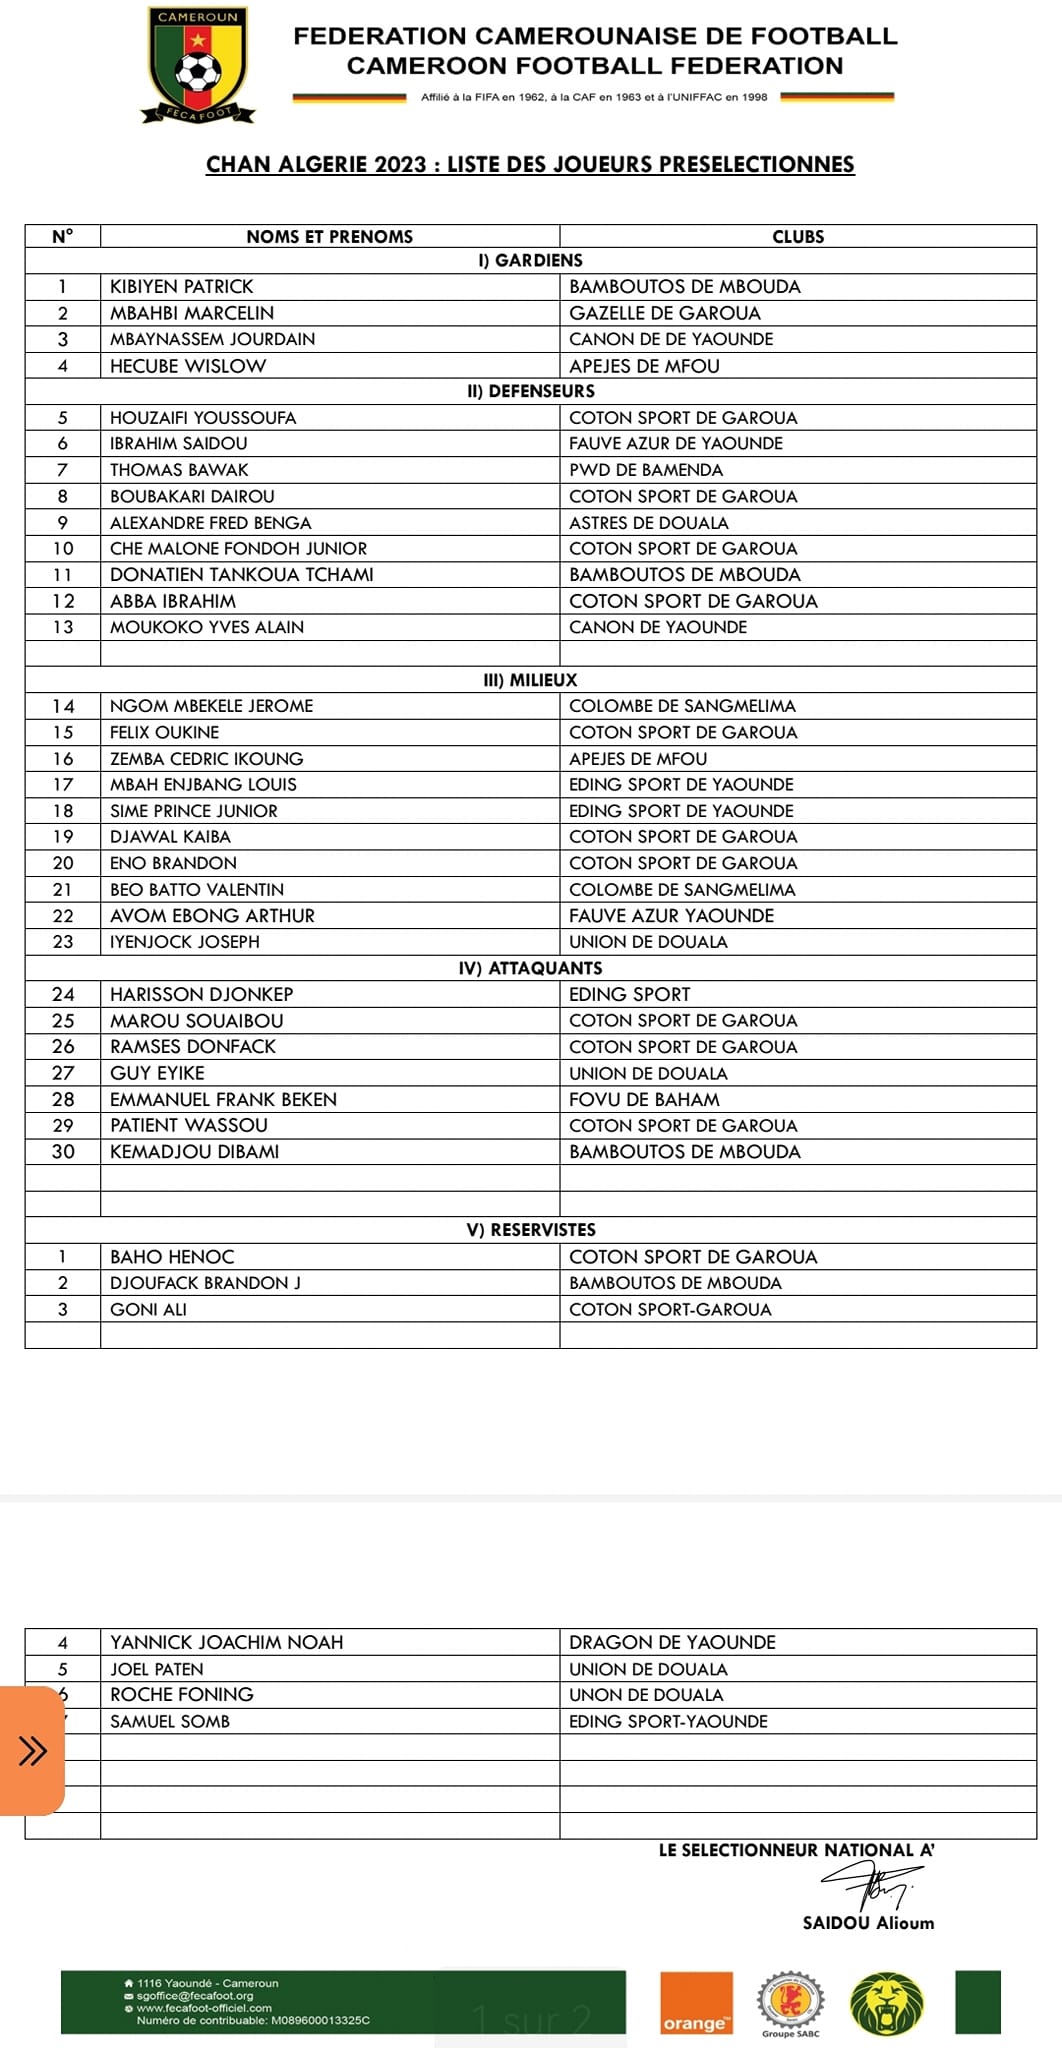 Liste des présélectionné pour le CHAN ALGERIE 2023